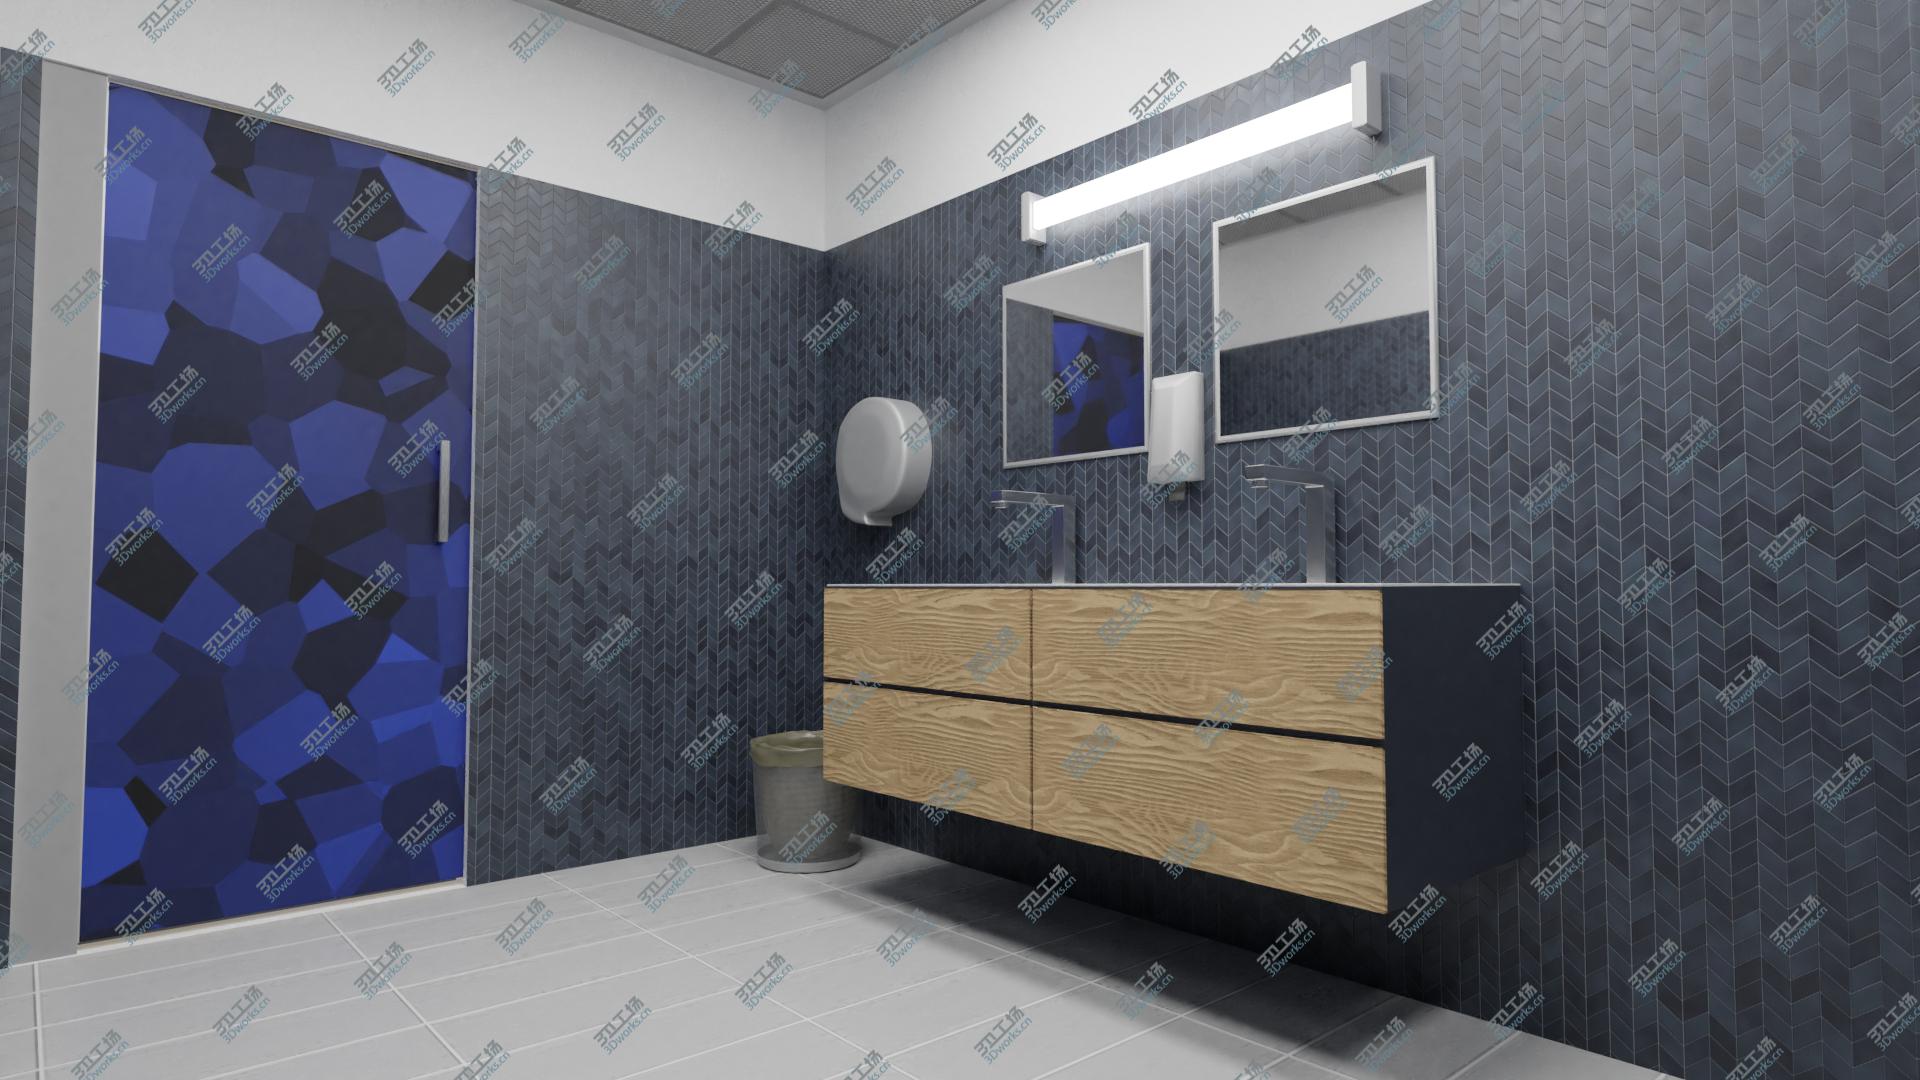 images/goods_img/2021040161/Realistic Bathroom Scene 8K PBR 3D model/3.jpg